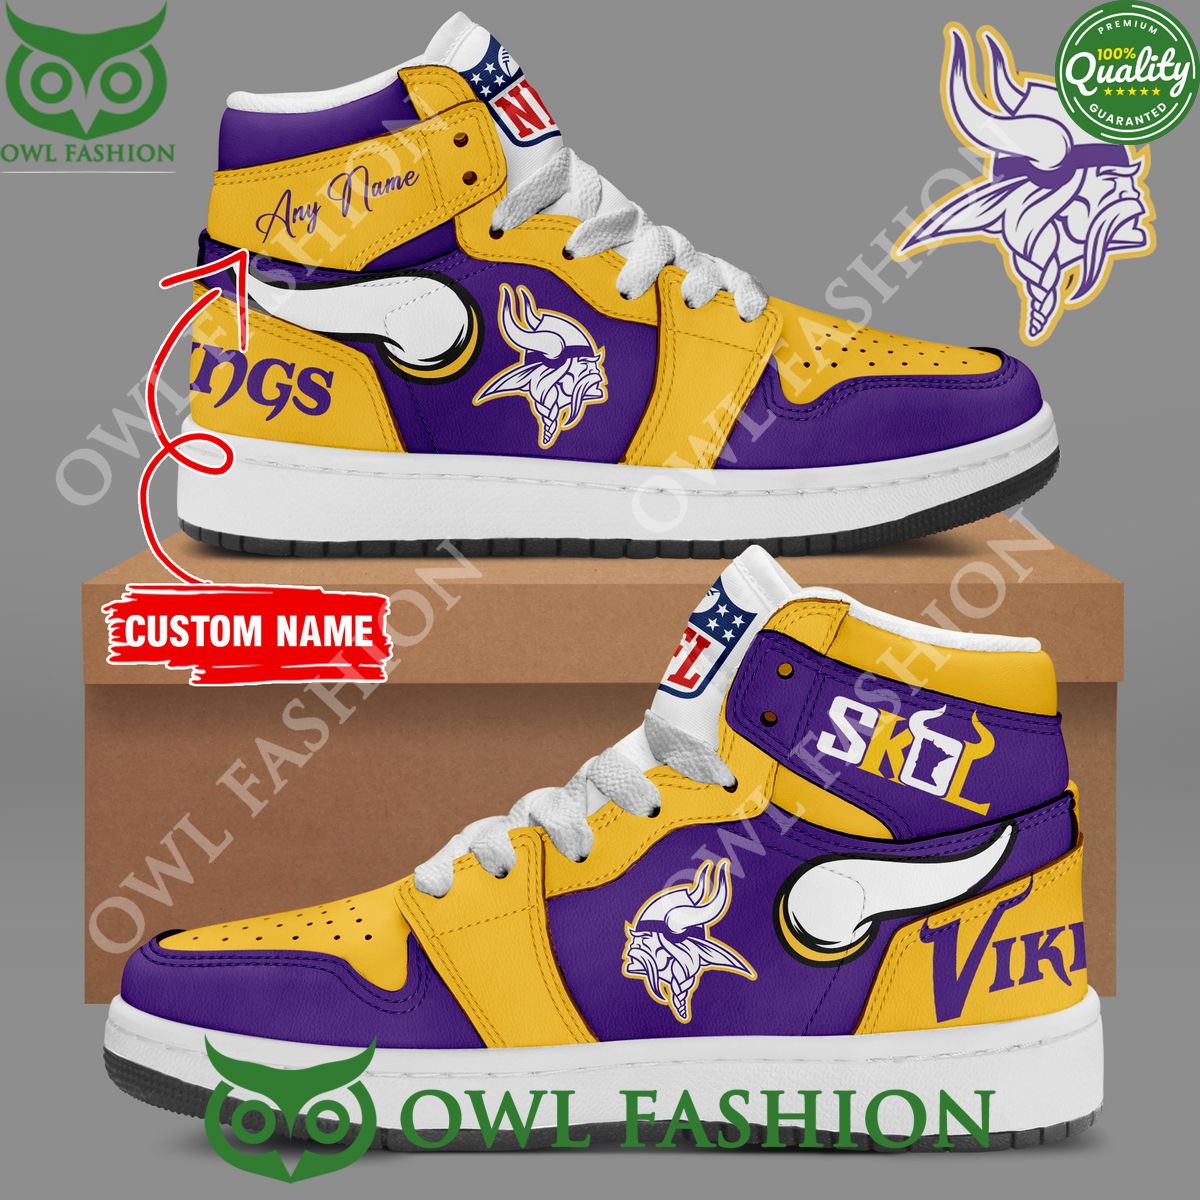 Minnesota Vikings NFL SKOL Air Jordan 1 Football Customized High Top shoes